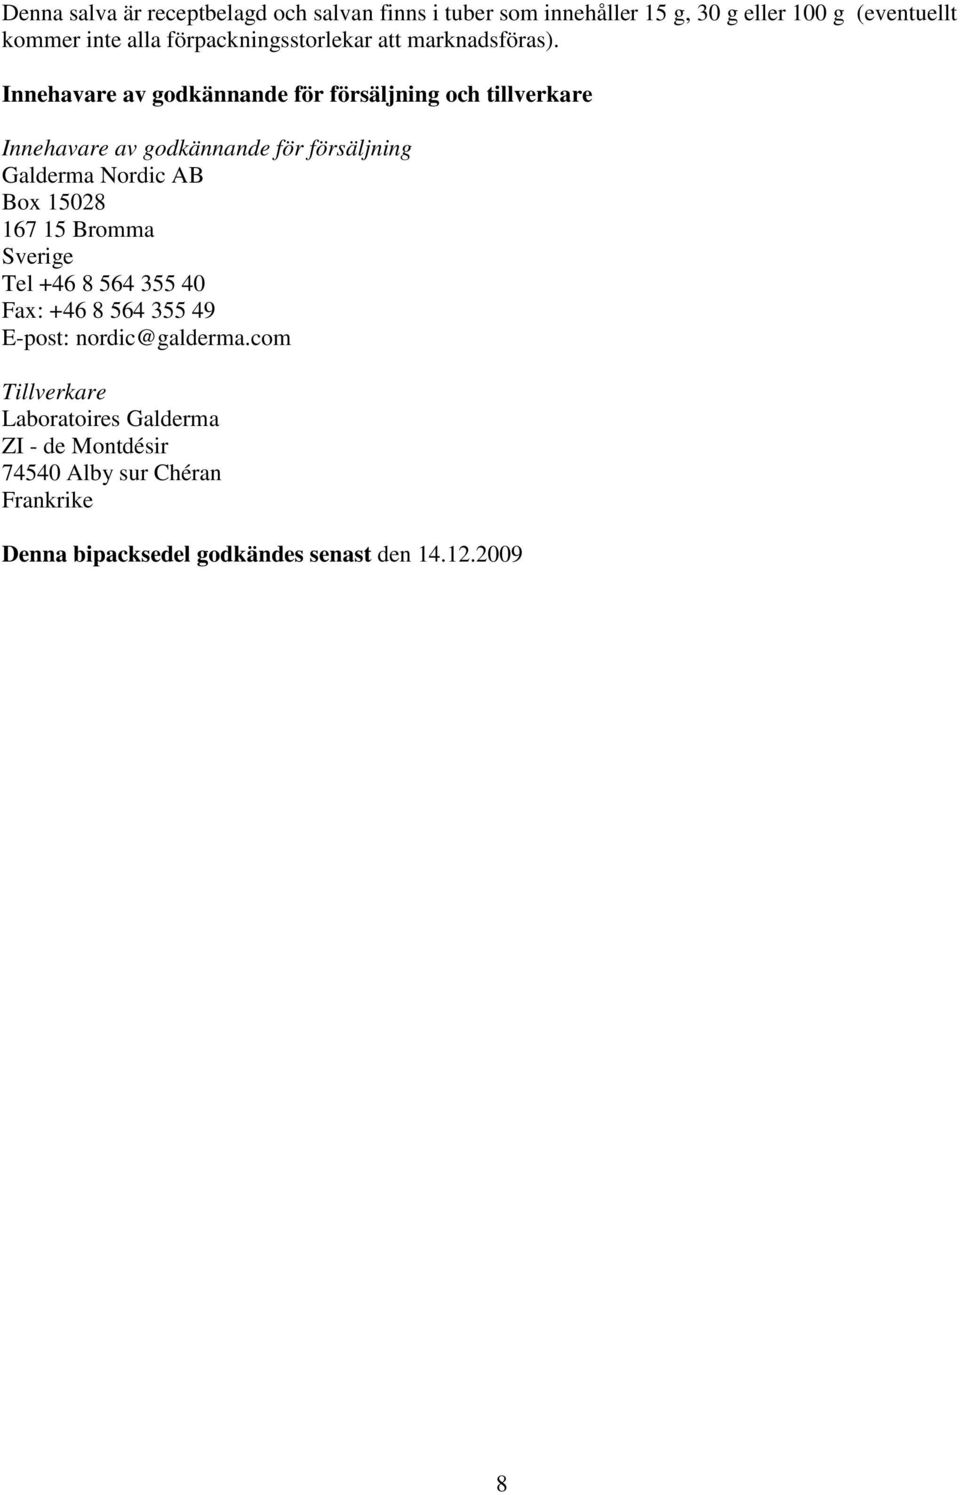 Innehavare av godkännande för försäljning och tillverkare Innehavare av godkännande för försäljning Galderma Nordic AB Box 15028